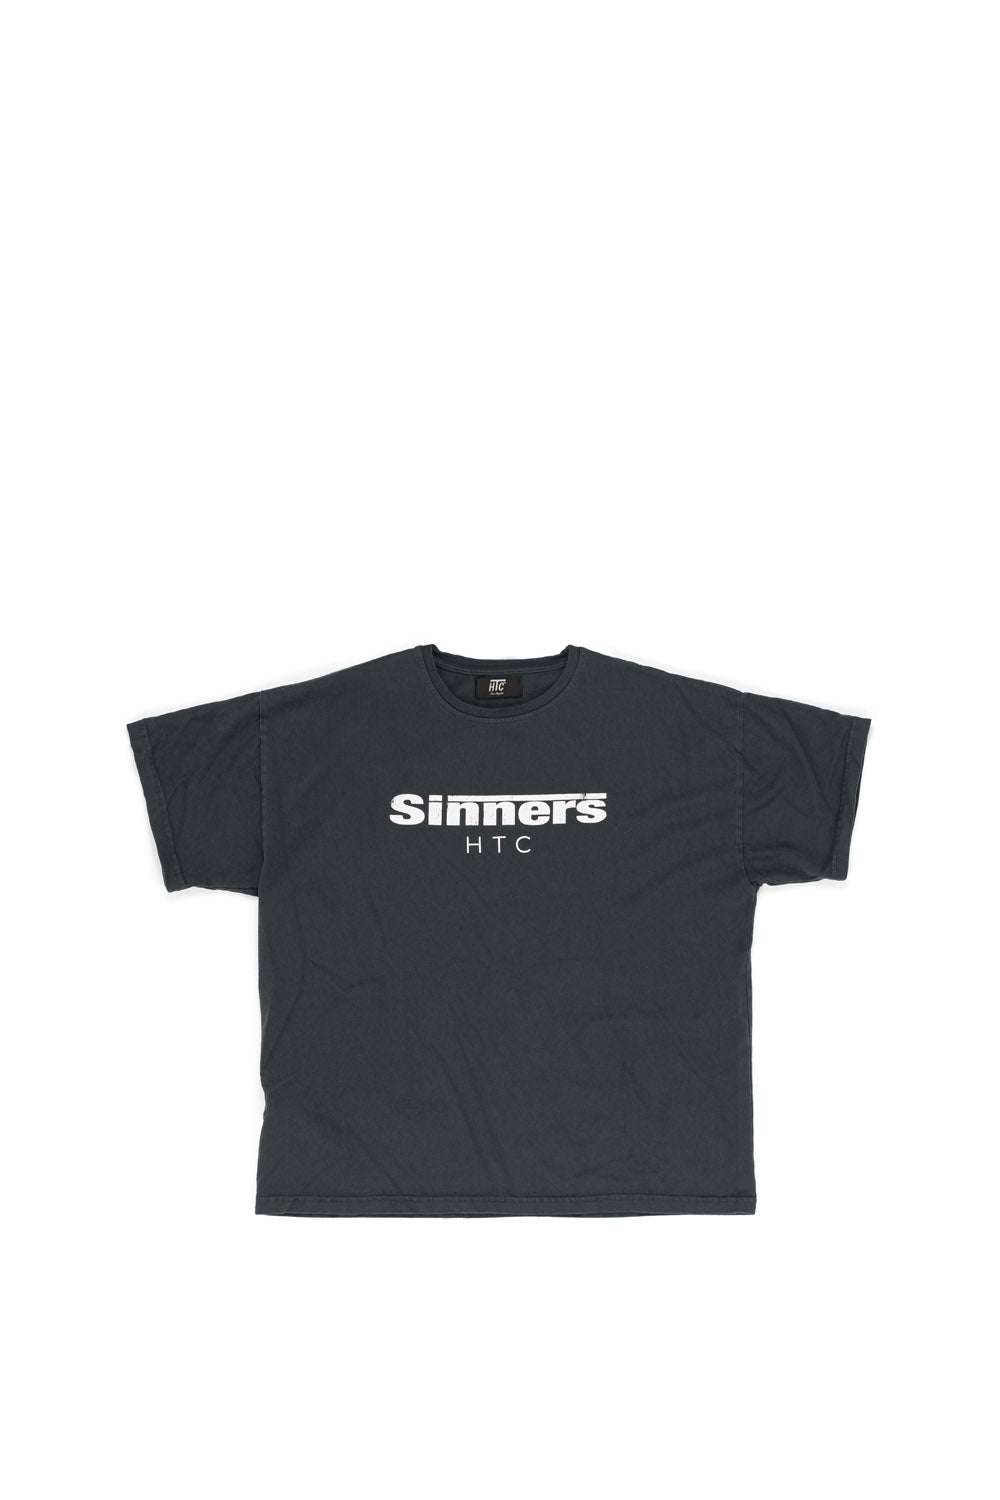 SINNERS T-SHIRT